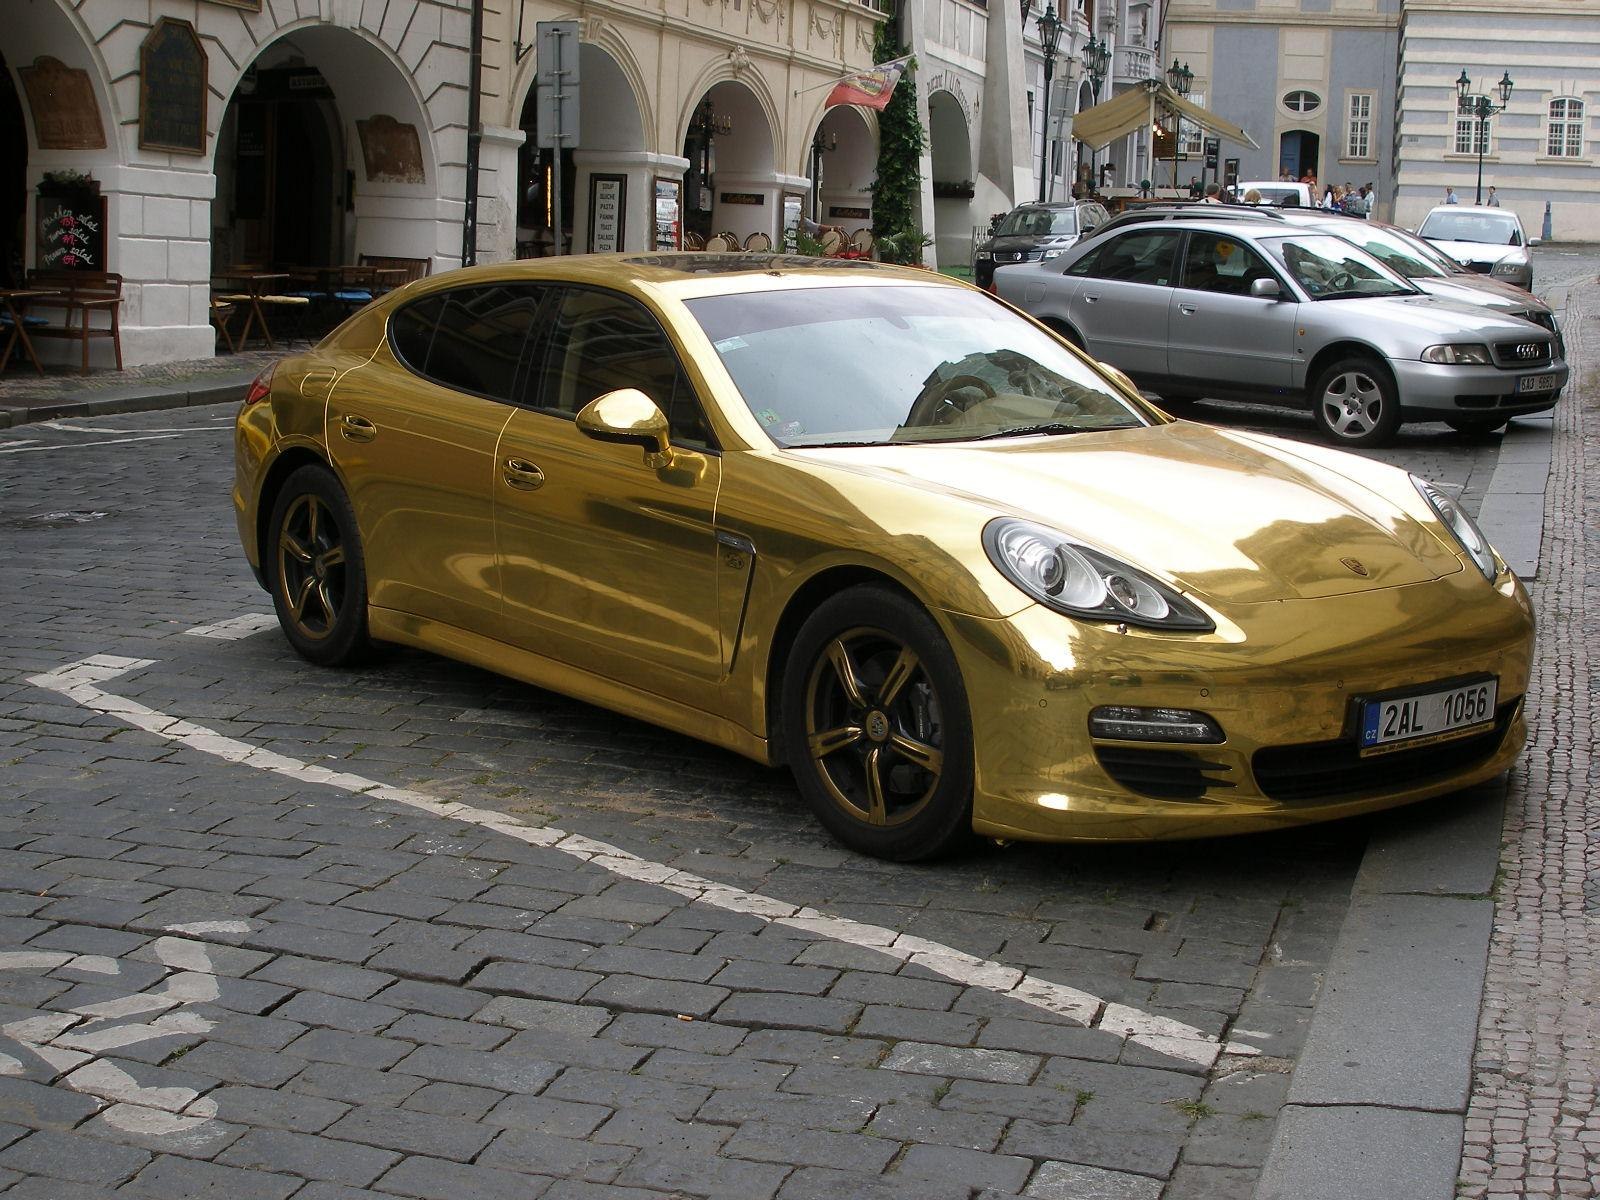 Gold машины. Бентли Континенталь золотой. Золотая машина. Золотистая машина. Автомобиль золотом цвете.